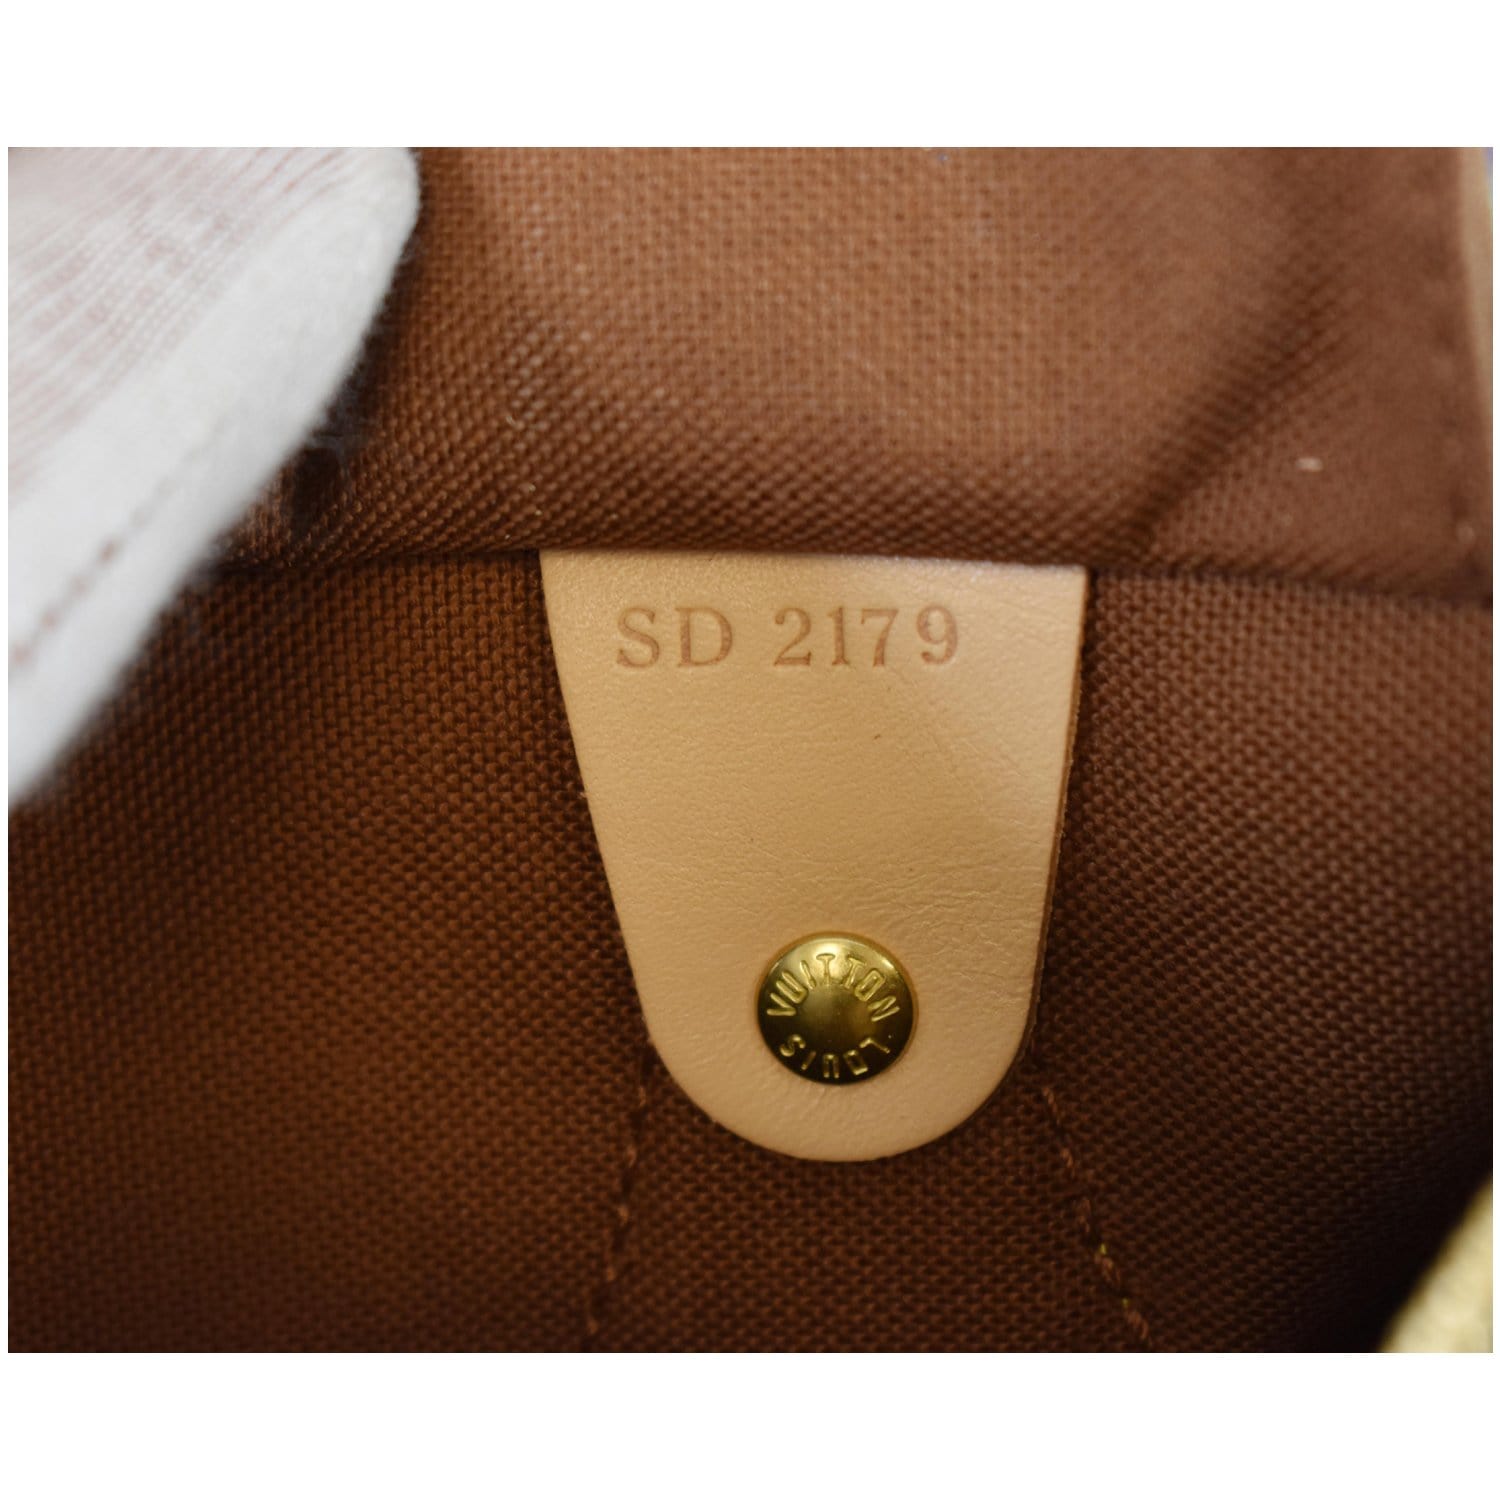 Louis Vuitton Speedy Speedy Bandouli√ Re 25, Brown